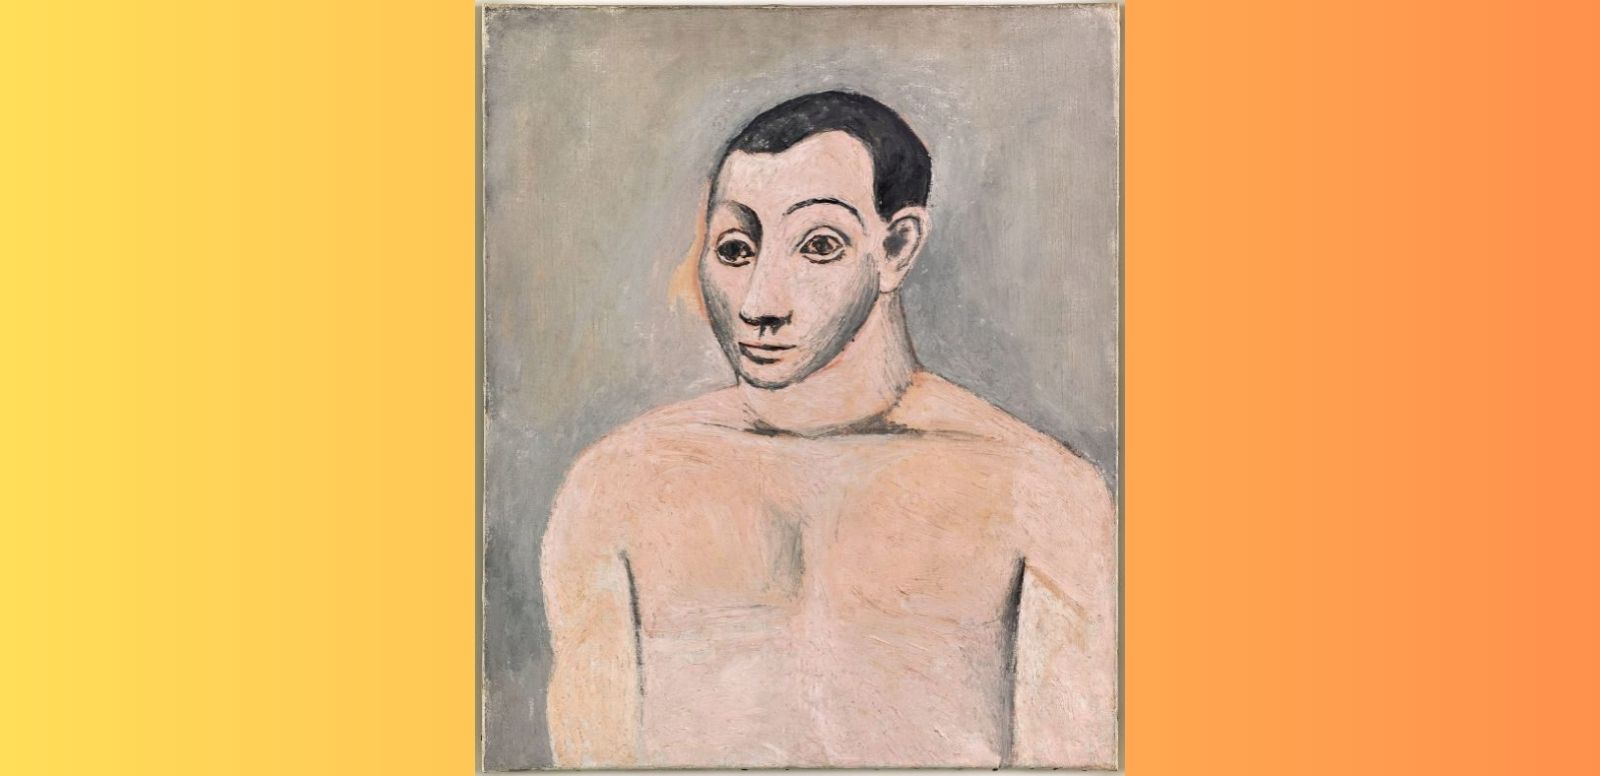 Pablo Picasso, "Autorretrato", 1906